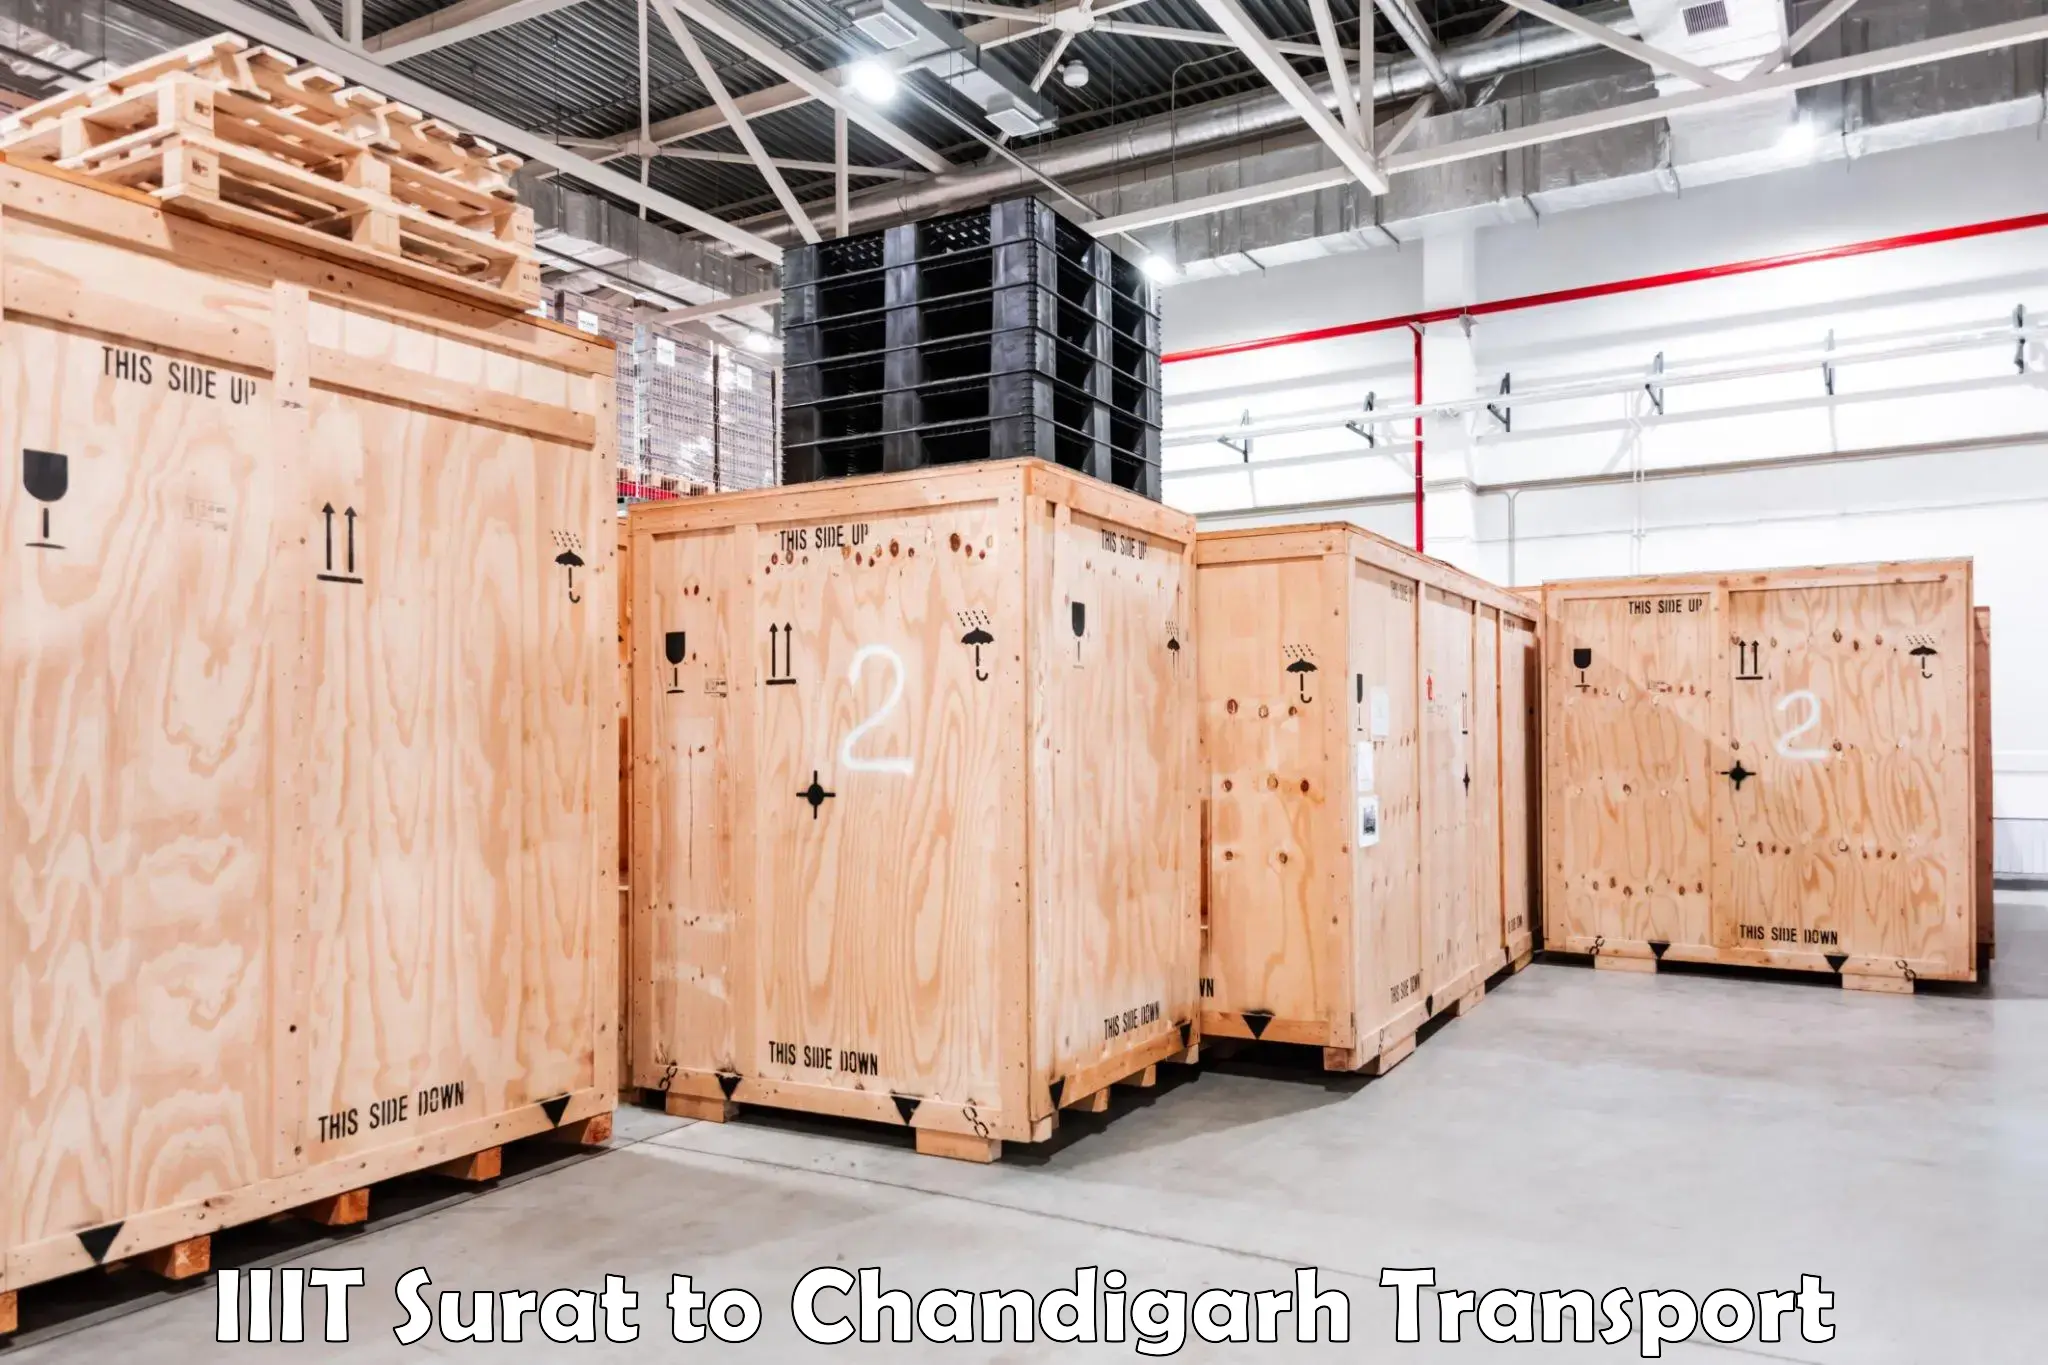 Interstate transport services IIIT Surat to Chandigarh